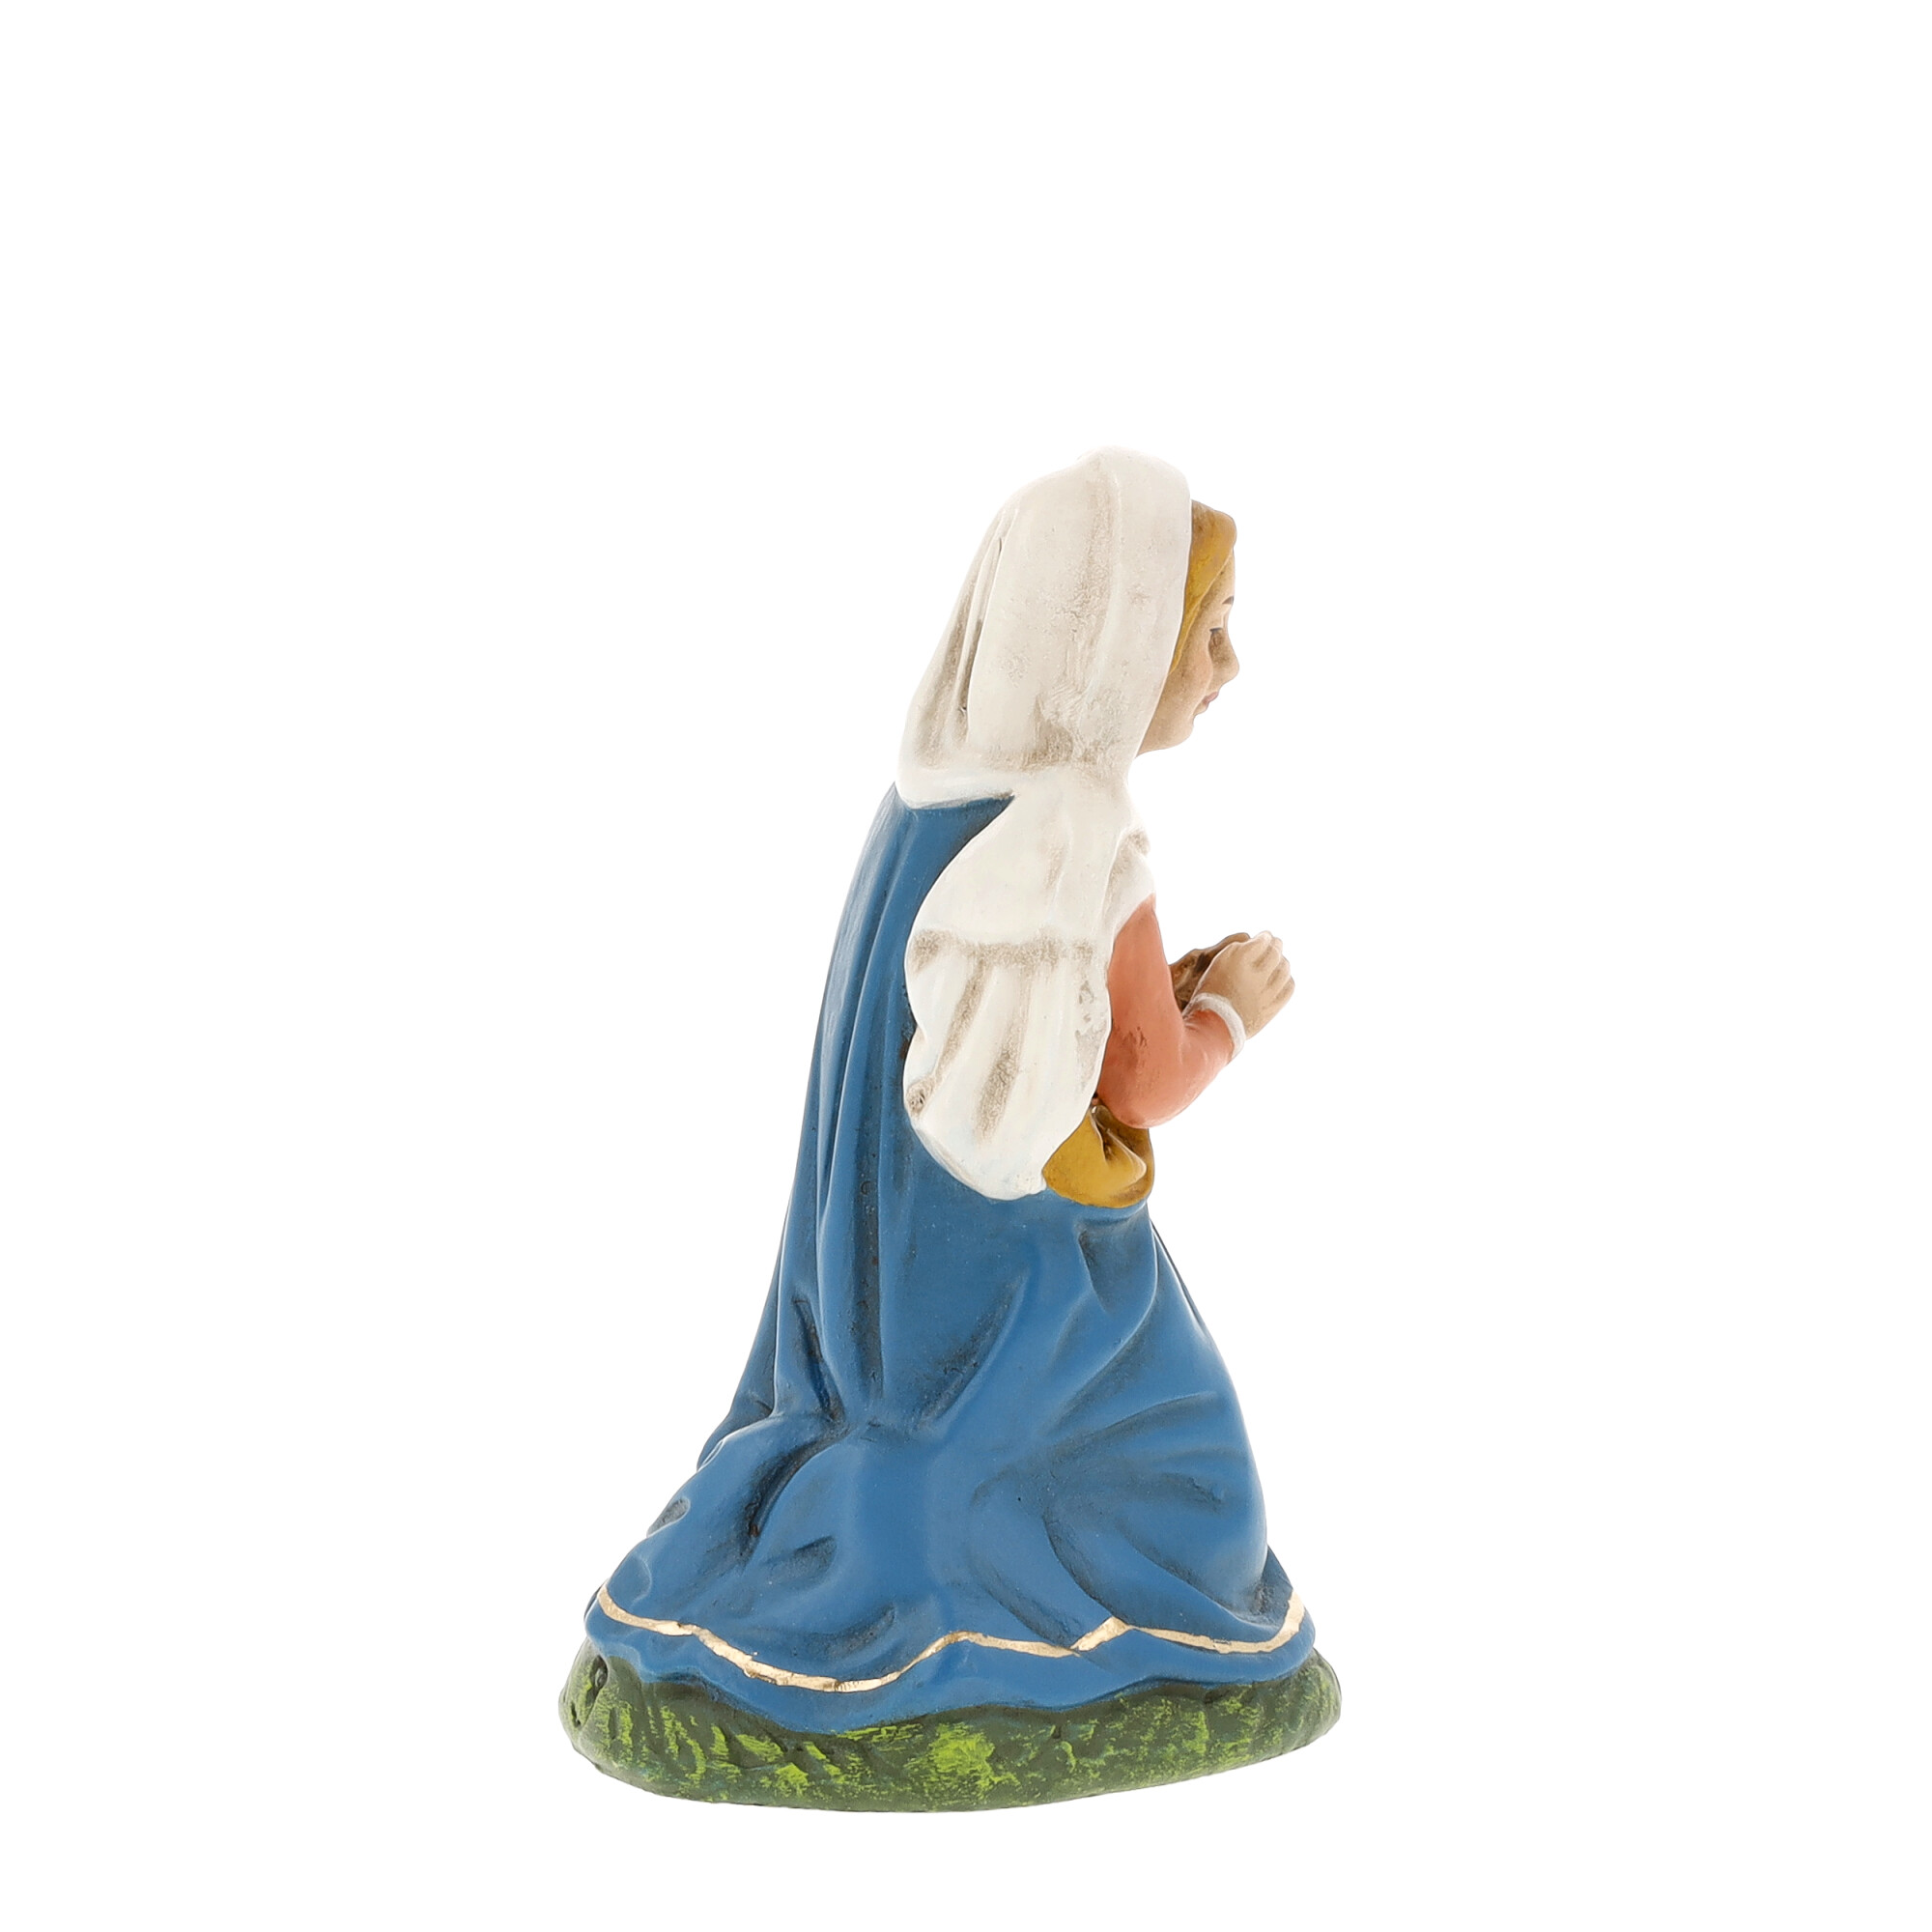 Maria kniend zu 10cm Figuren - MAROLIN Krippenfigur